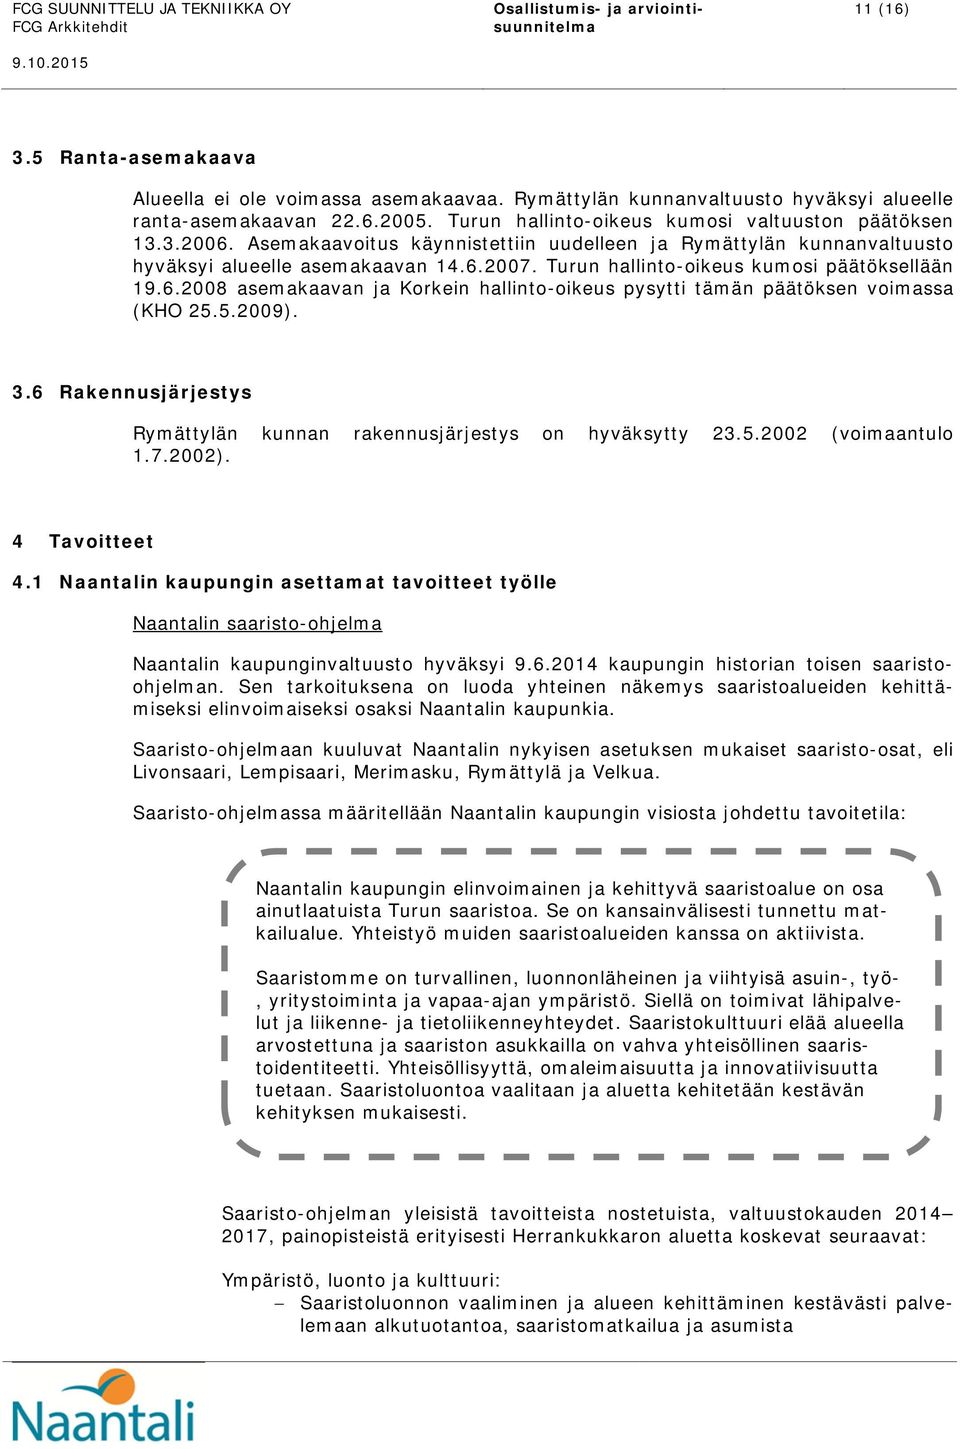 Asemakaavoitus käynnistettiin uudelleen ja Rymättylän kunnanvaltuusto hyväksyi alueelle asemakaavan 14.6.2007. Turun hallinto-oikeus kumosi päätöksellään 19.6.2008 asemakaavan ja Korkein hallinto-oikeus pysytti tämän päätöksen voimassa (KHO 25.